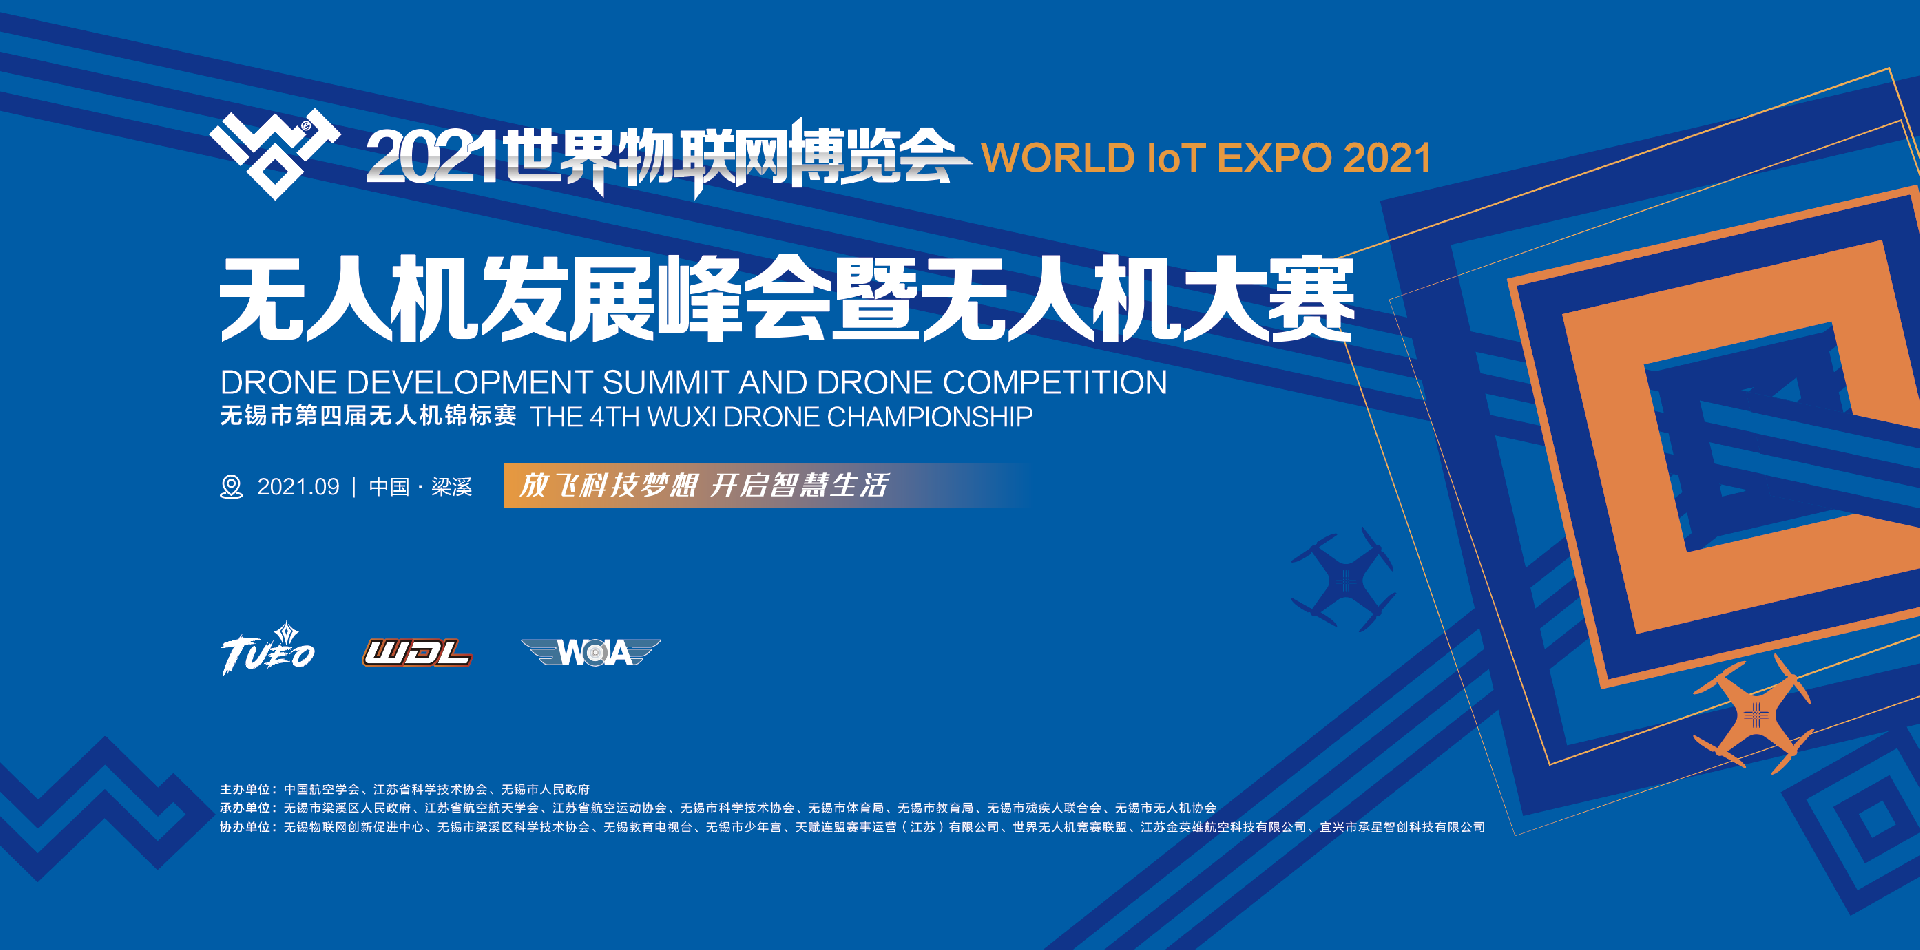 2021世界物联网博览会国际无人机发展峰会暨无人机大赛（无锡市第四届无人机锦标赛）